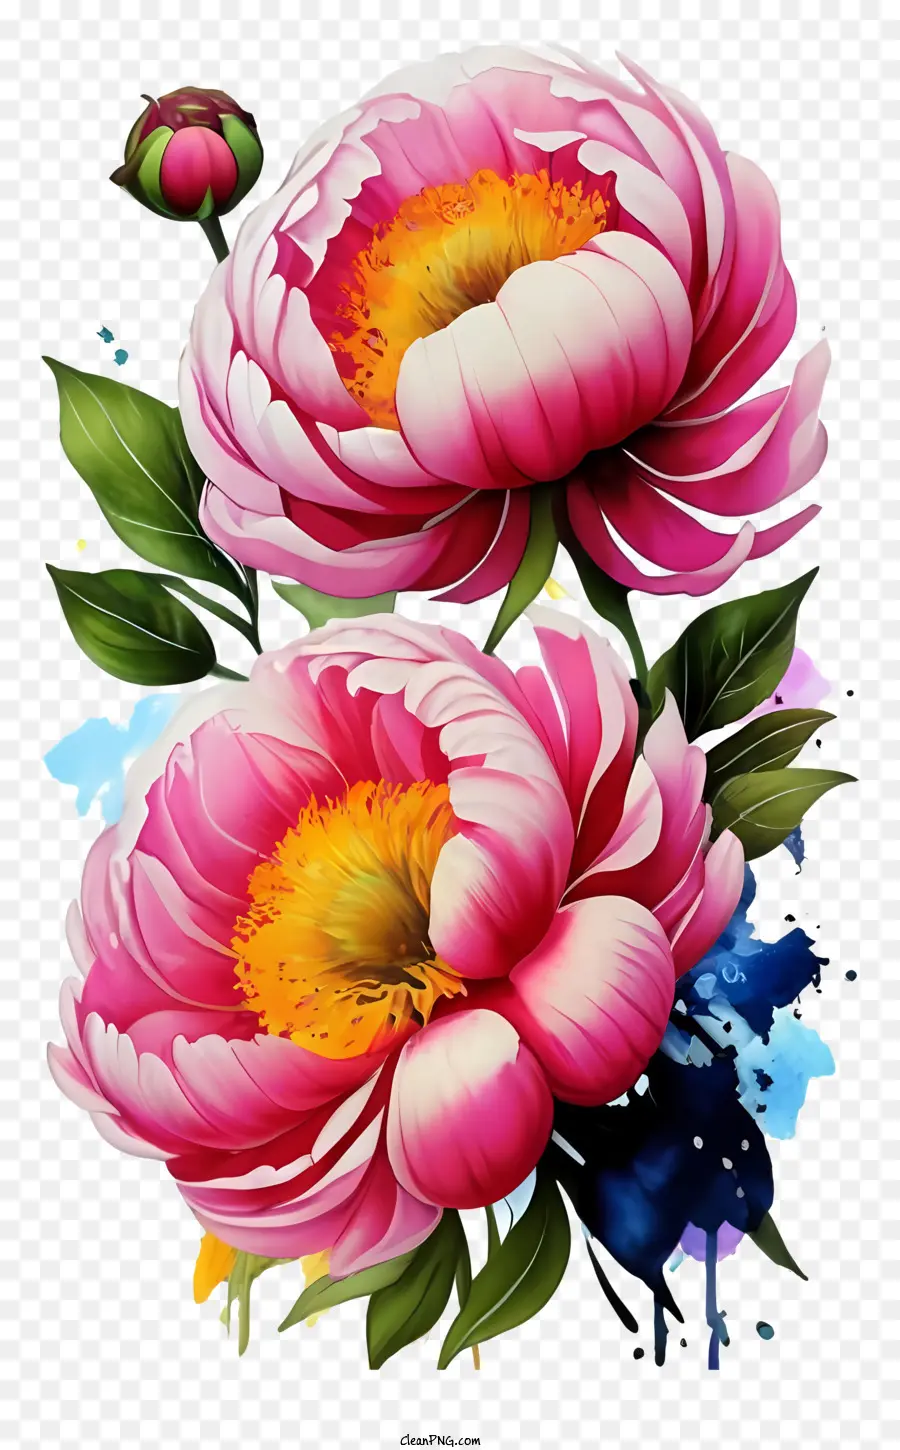 Hoa hồng thân cây màu xanh lá cây rực rỡ lá màu hồng trung tâm màu vàng - Hình ảnh tươi sáng, đầy màu sắc của hai bông hoa màu hồng